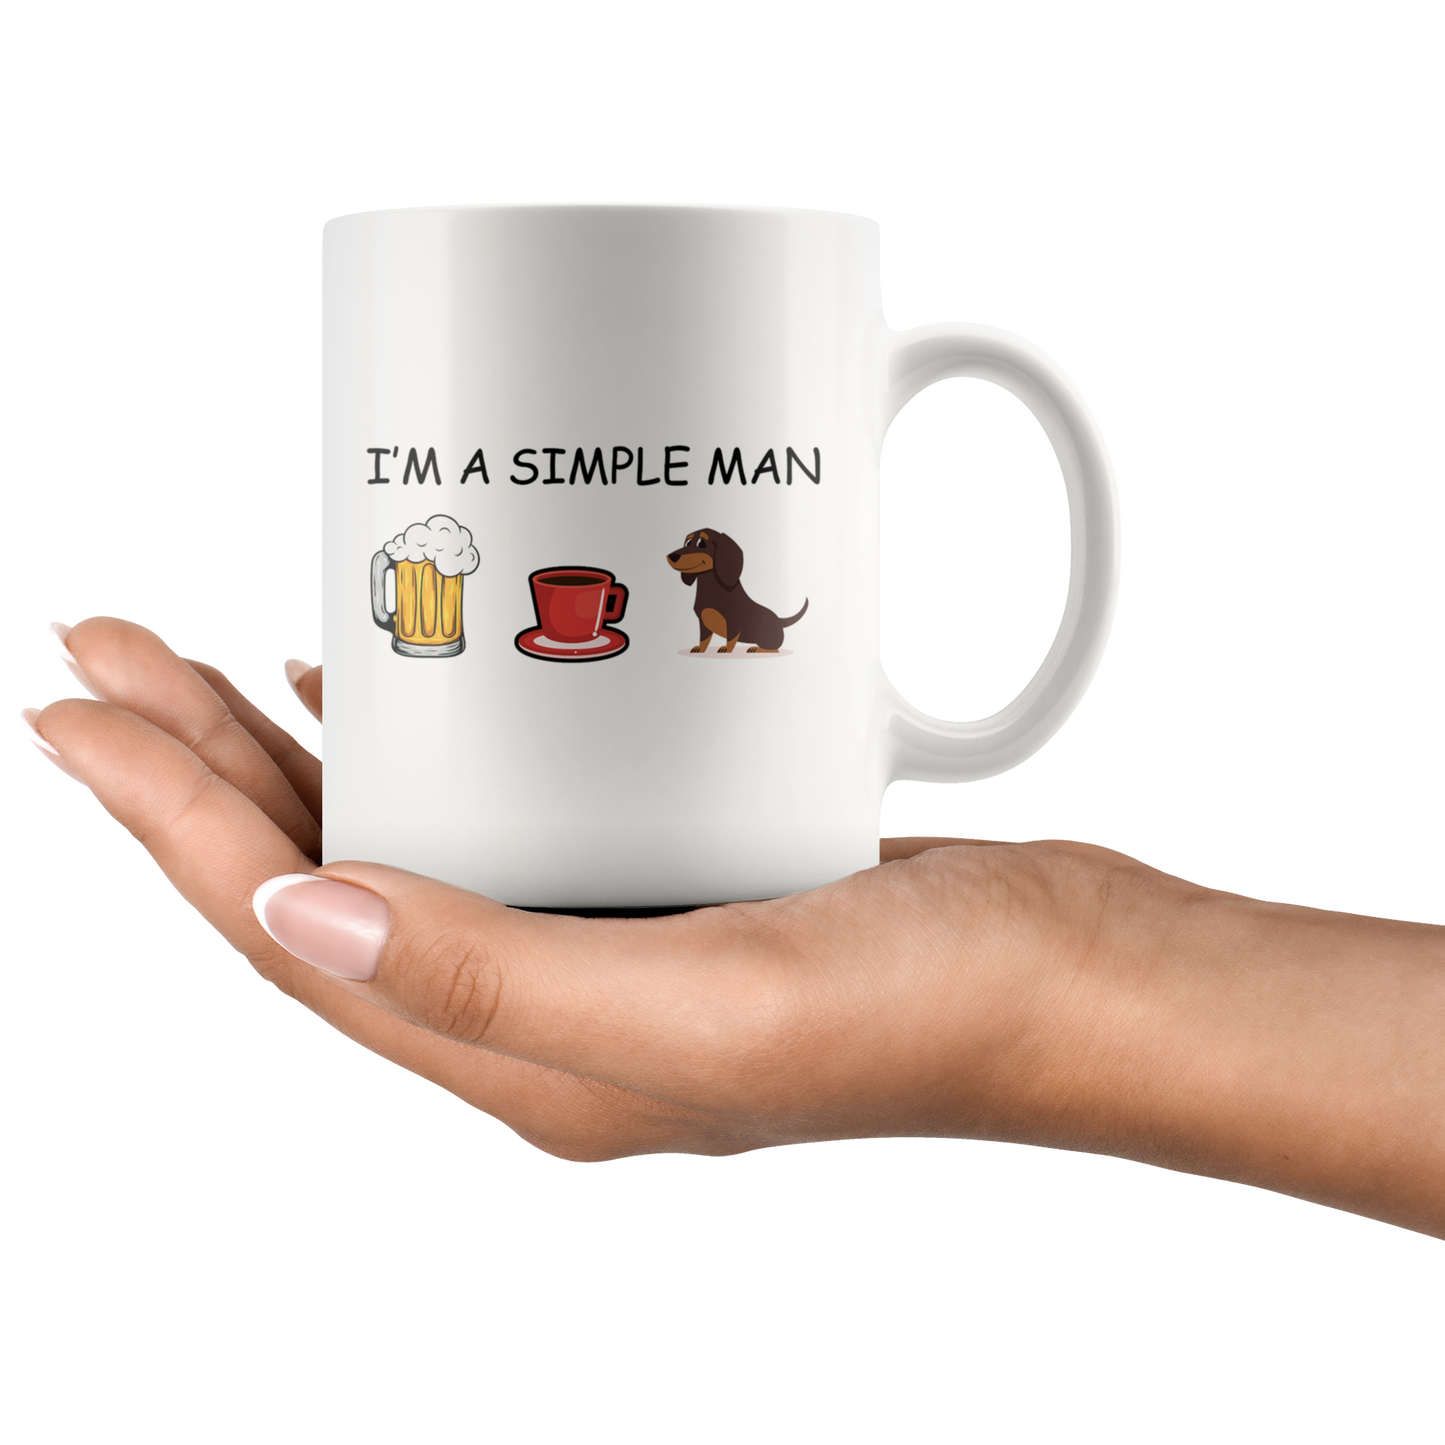 Sample Man - Mug